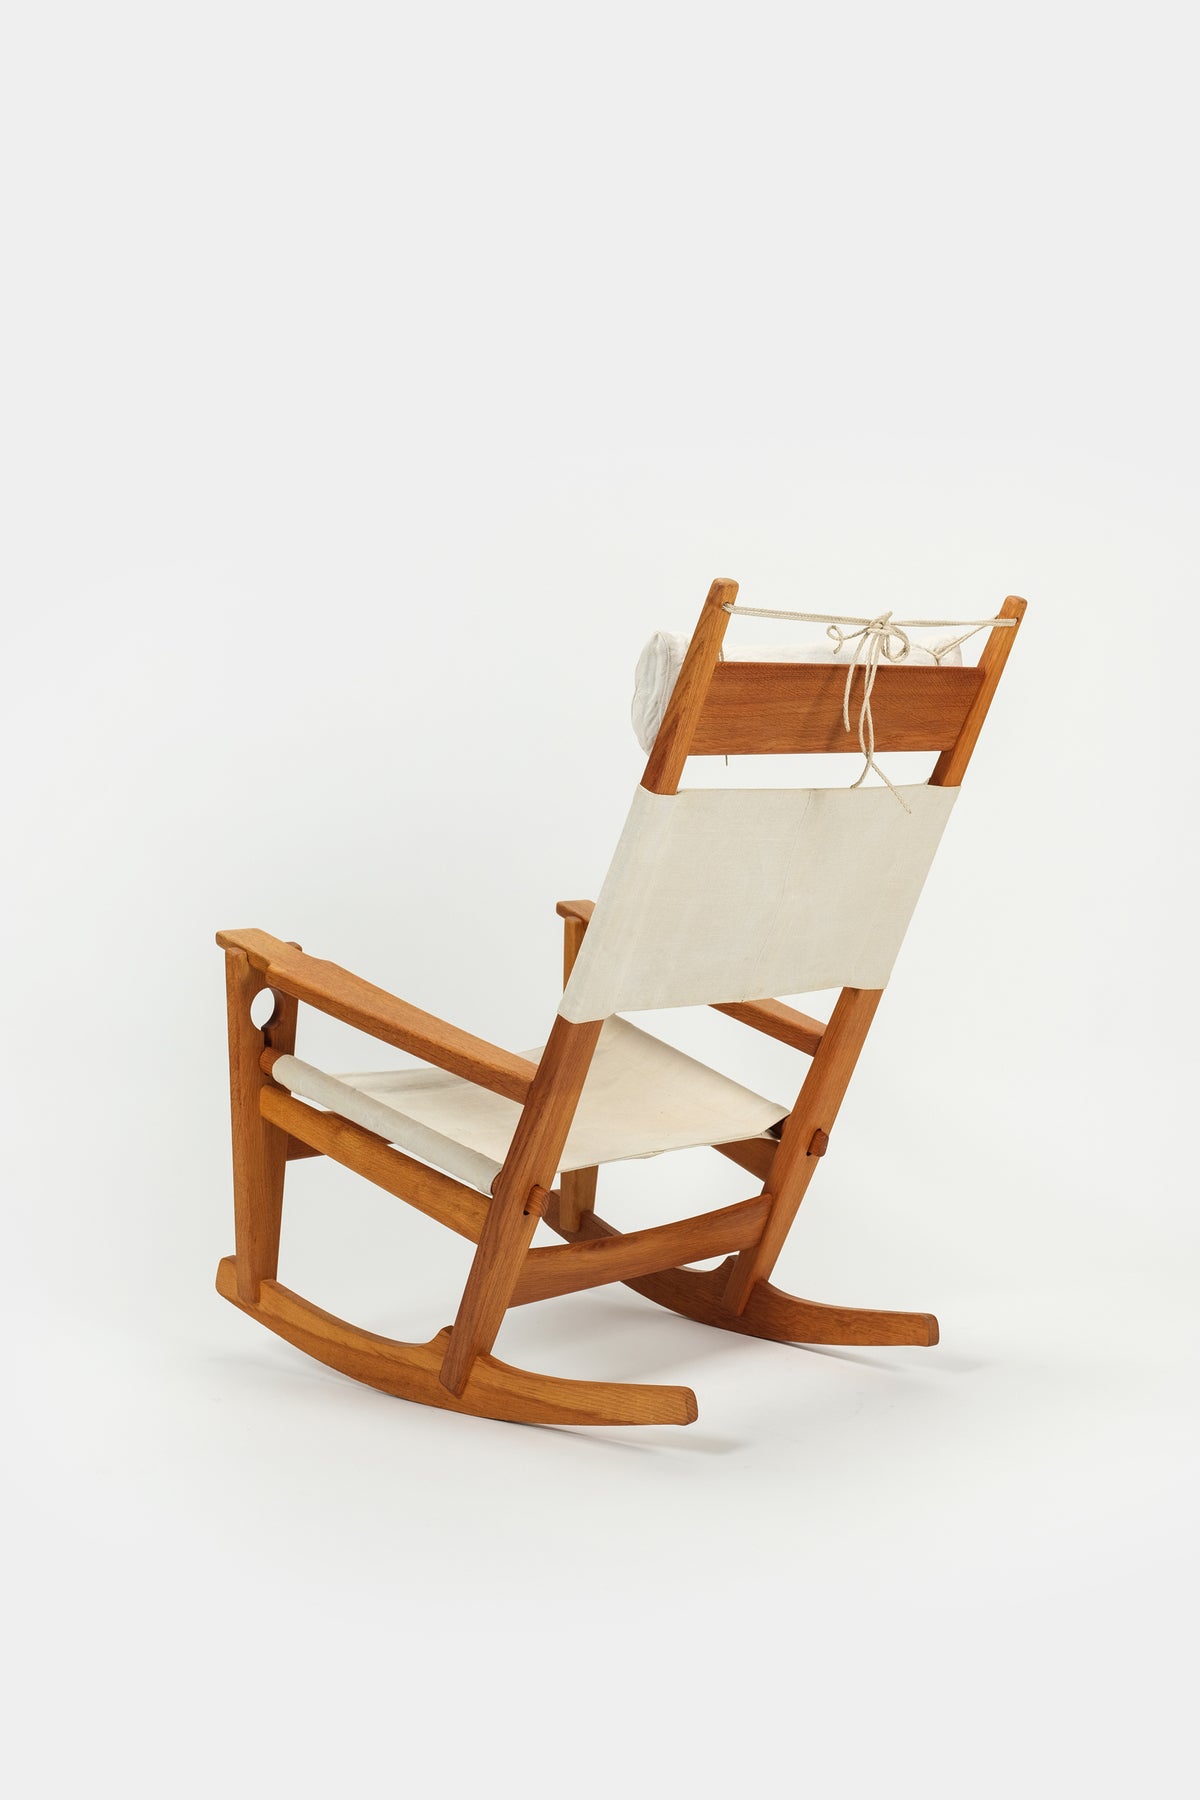 Rocking chair Hans Wegner Getama Keyhole Mod. 673